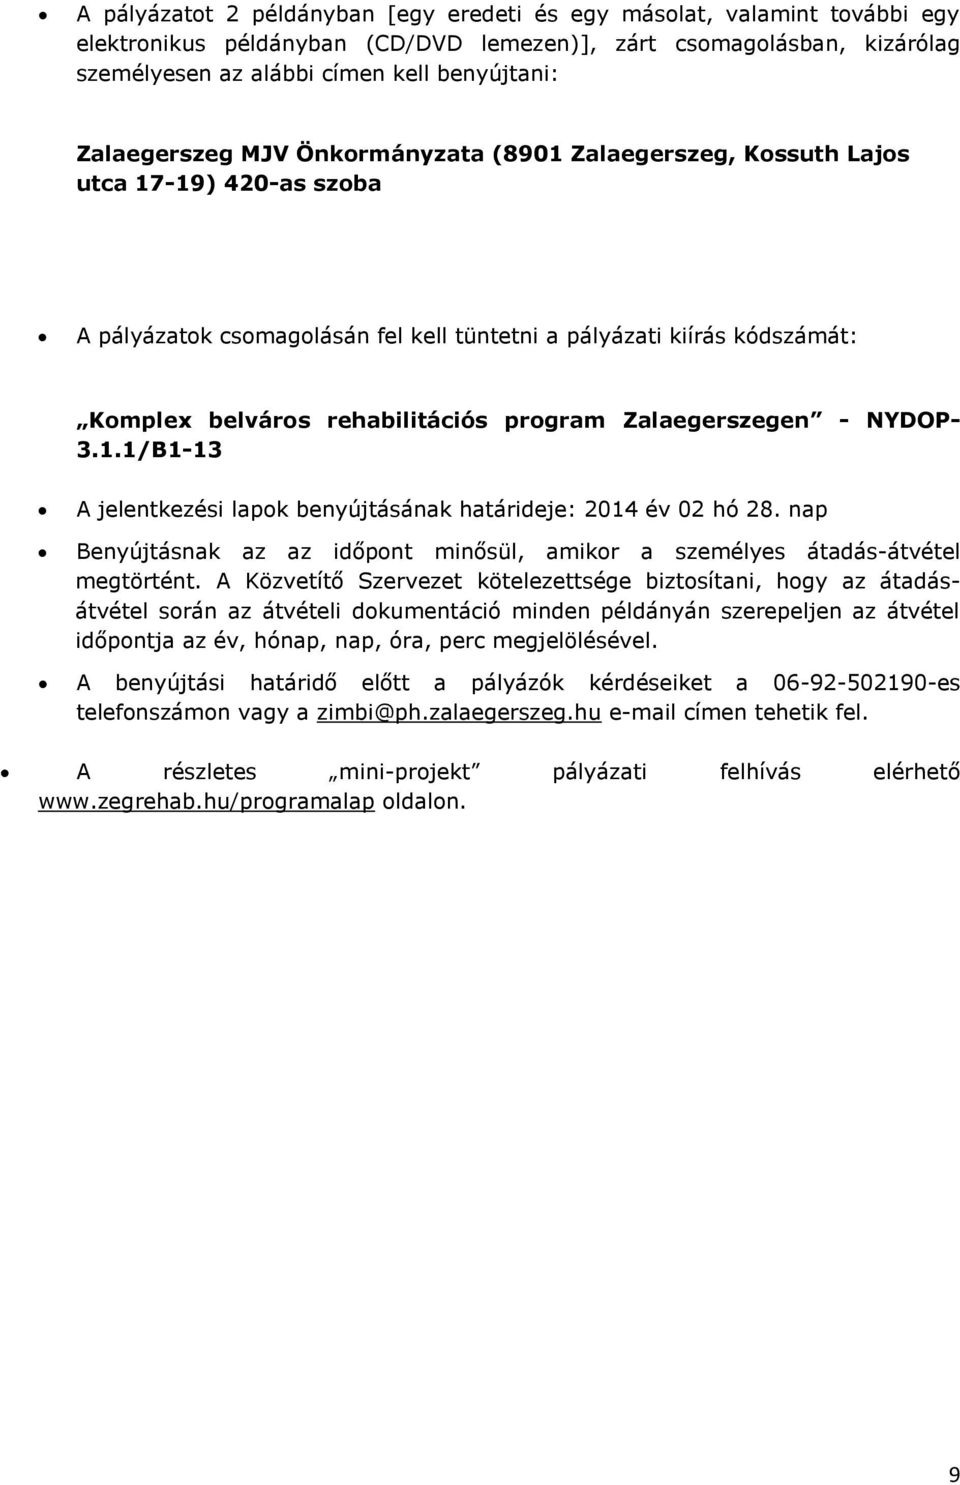 program Zalaegerszegen - NYDOP- 3.1.1/B1-13 A jelentkezési lapok benyújtásának határideje: 2014 év 02 hó 28. nap Benyújtásnak az az időpont minősül, amikor a személyes átadás-átvétel megtörtént.